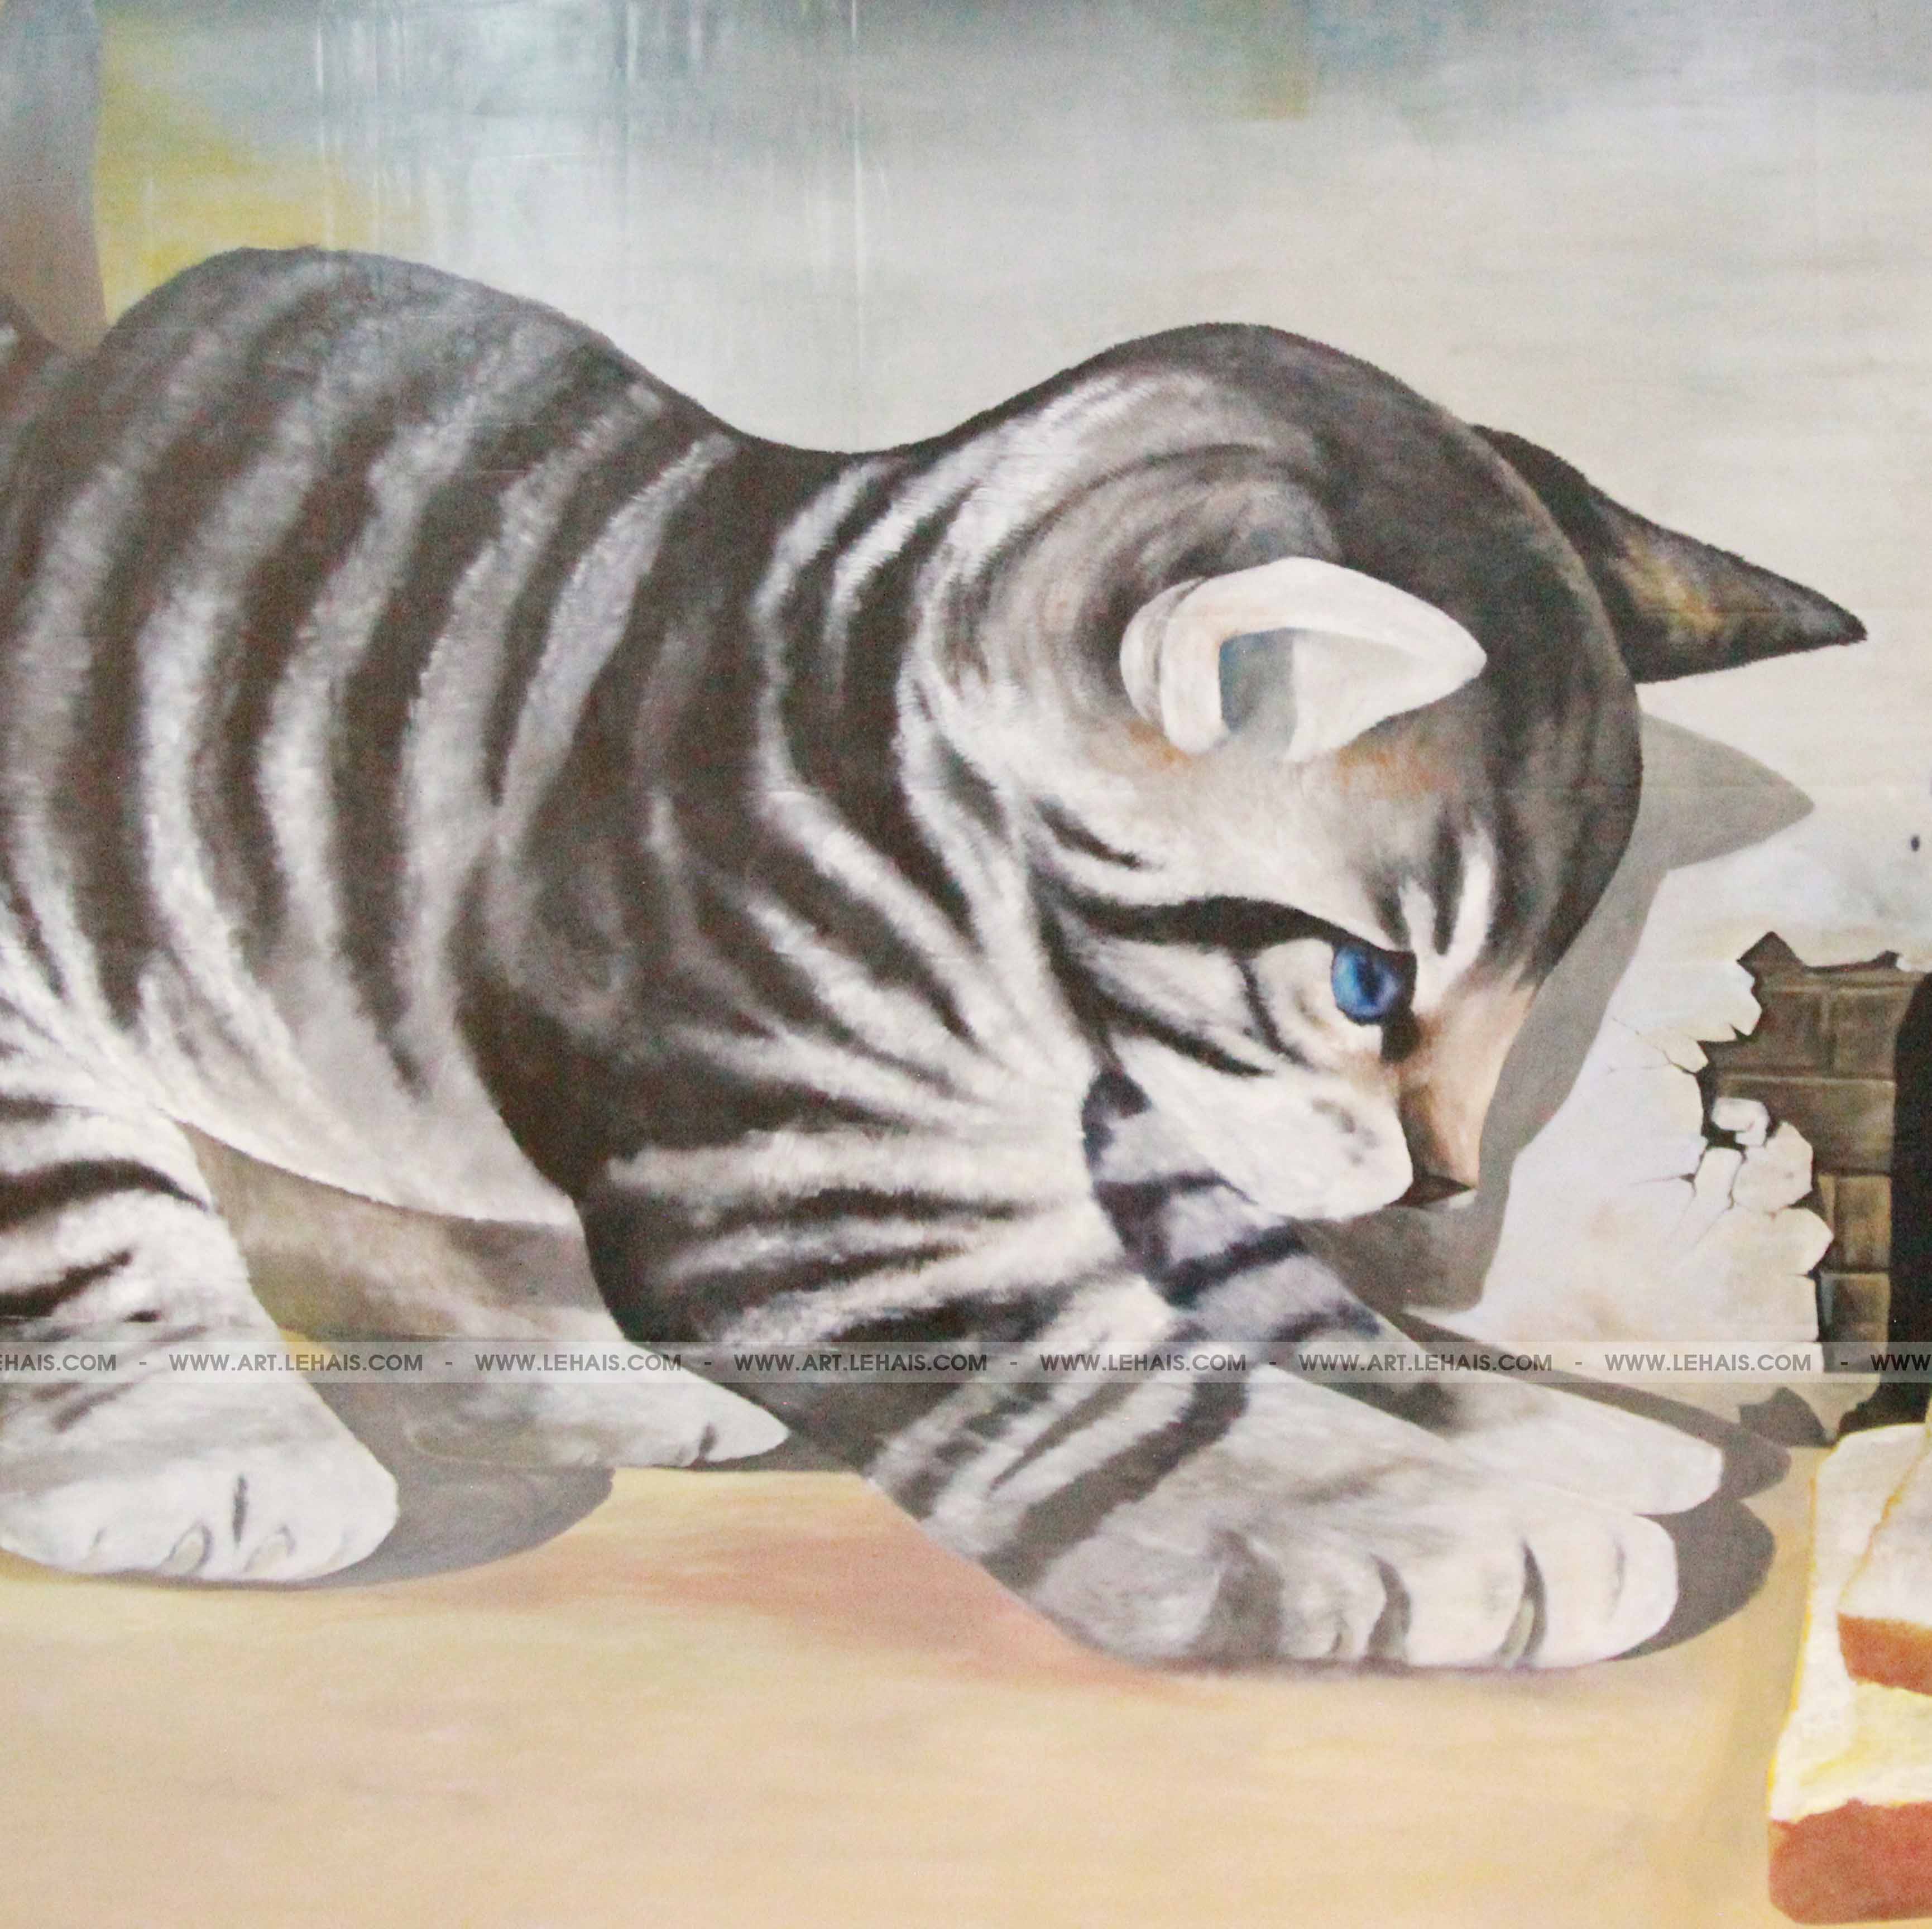 Khung cảnh tuyệt đẹp của Mipec Long Biên đã được trang trí bởi các tác phẩm nghệ thuật 3D đầy ấn tượng. Một trong số đó là bức vẽ thế giới khổng lồ của các chú mèo đầy màu sắc. Hãy đến để thưởng thức và chiêm ngưỡng những tác phẩm nghệ thuật tuyệt vời này.